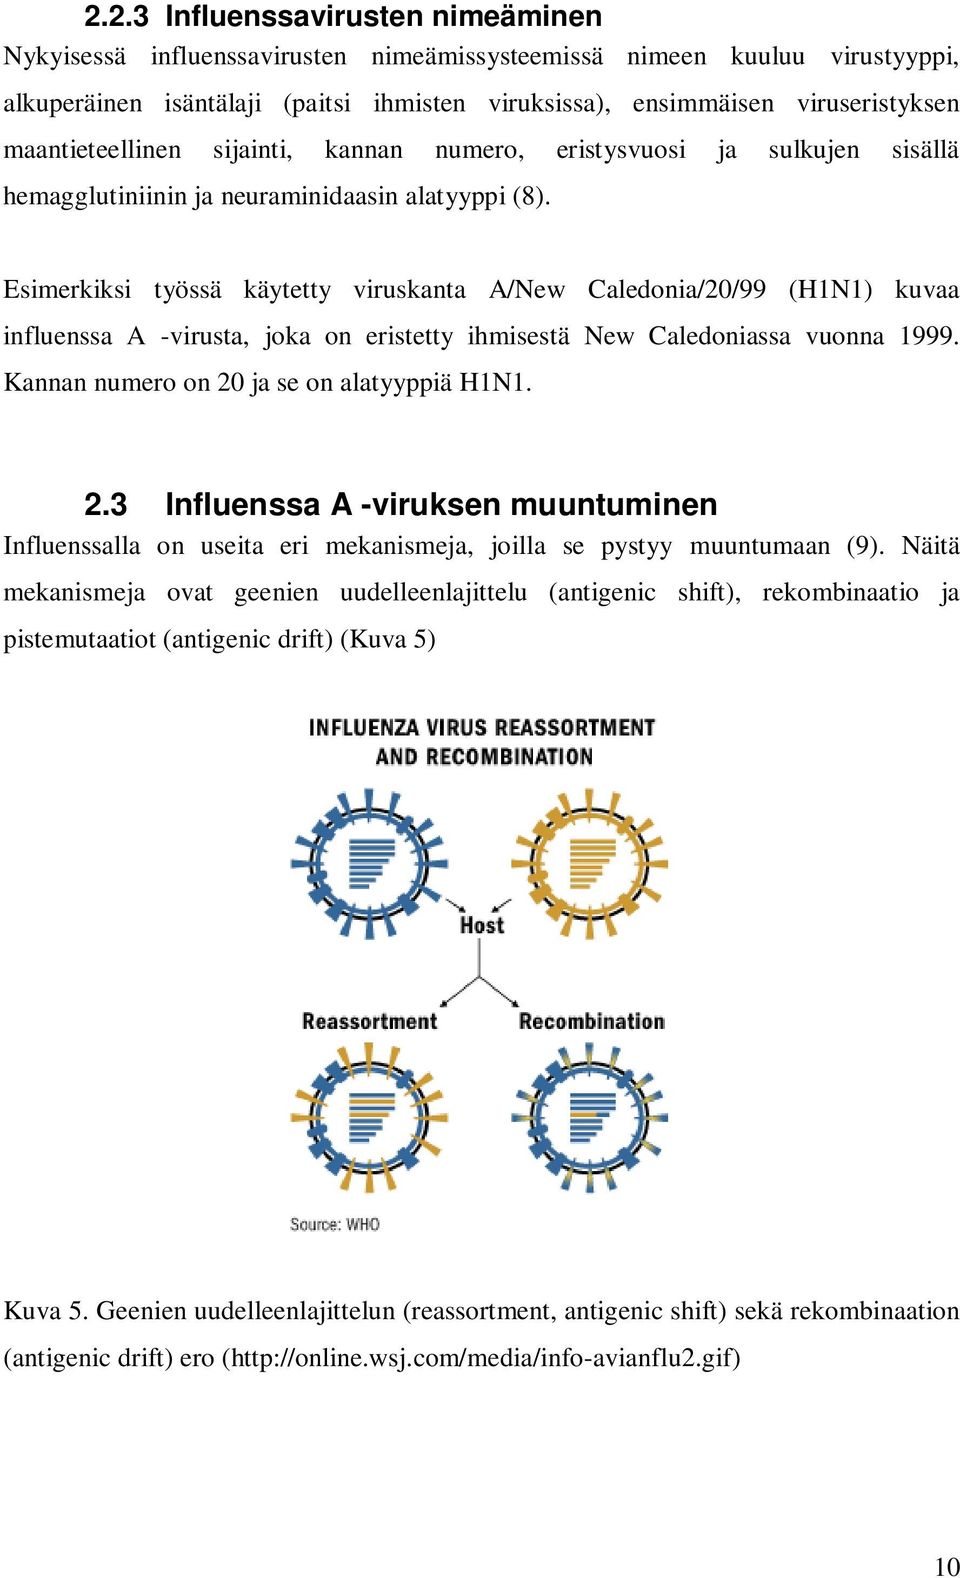 Esimerkiksi työssä käytetty viruskanta A/New Caledonia/20/99 (H1N1) kuvaa influenssa A -virusta, joka on eristetty ihmisestä New Caledoniassa vuonna 1999. Kannan numero on 20 ja se on alatyyppiä H1N1.